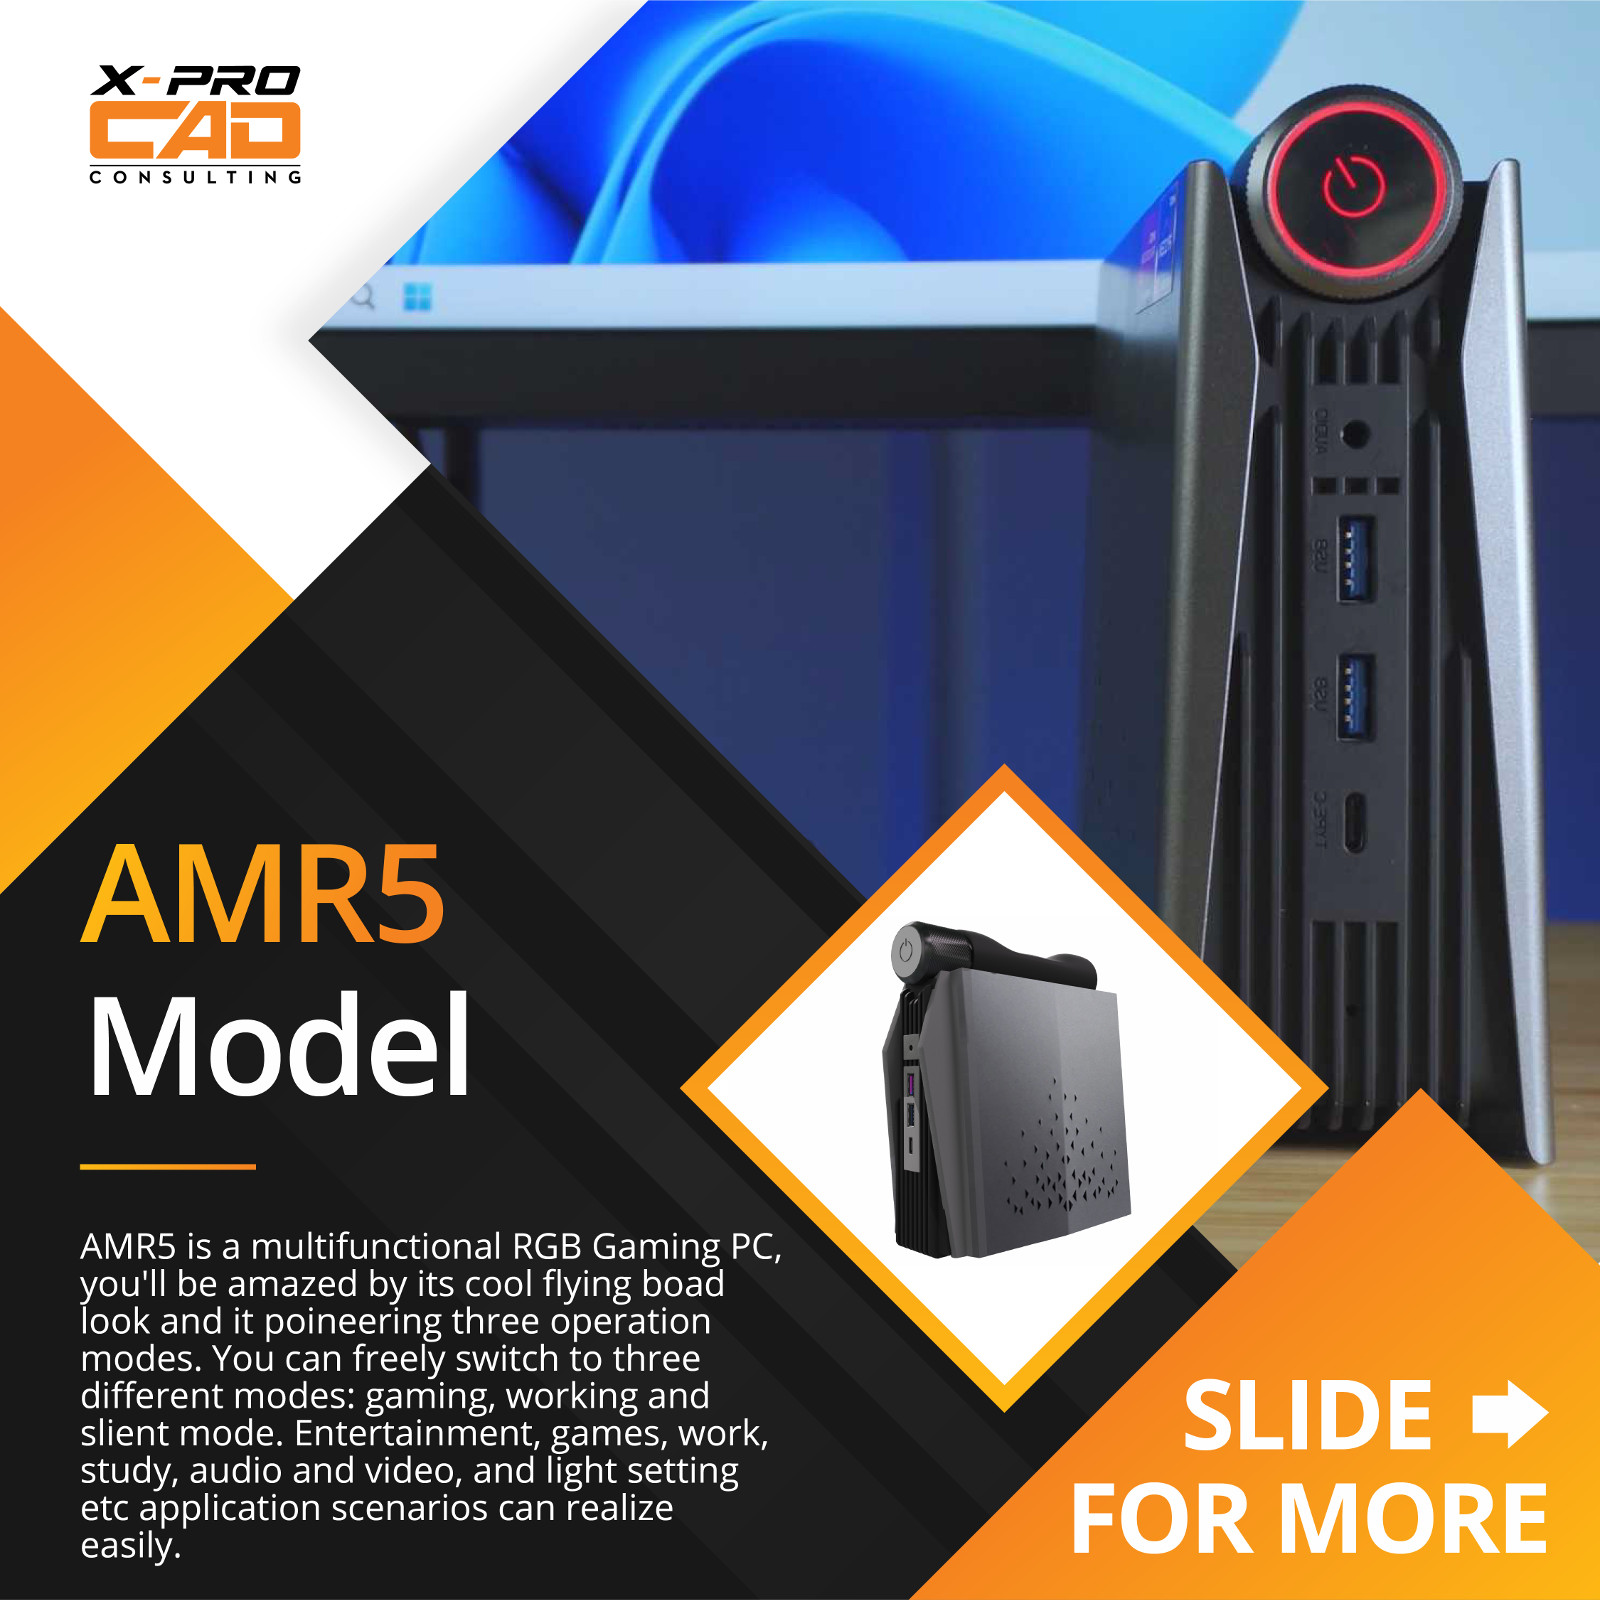 AMR5 Model